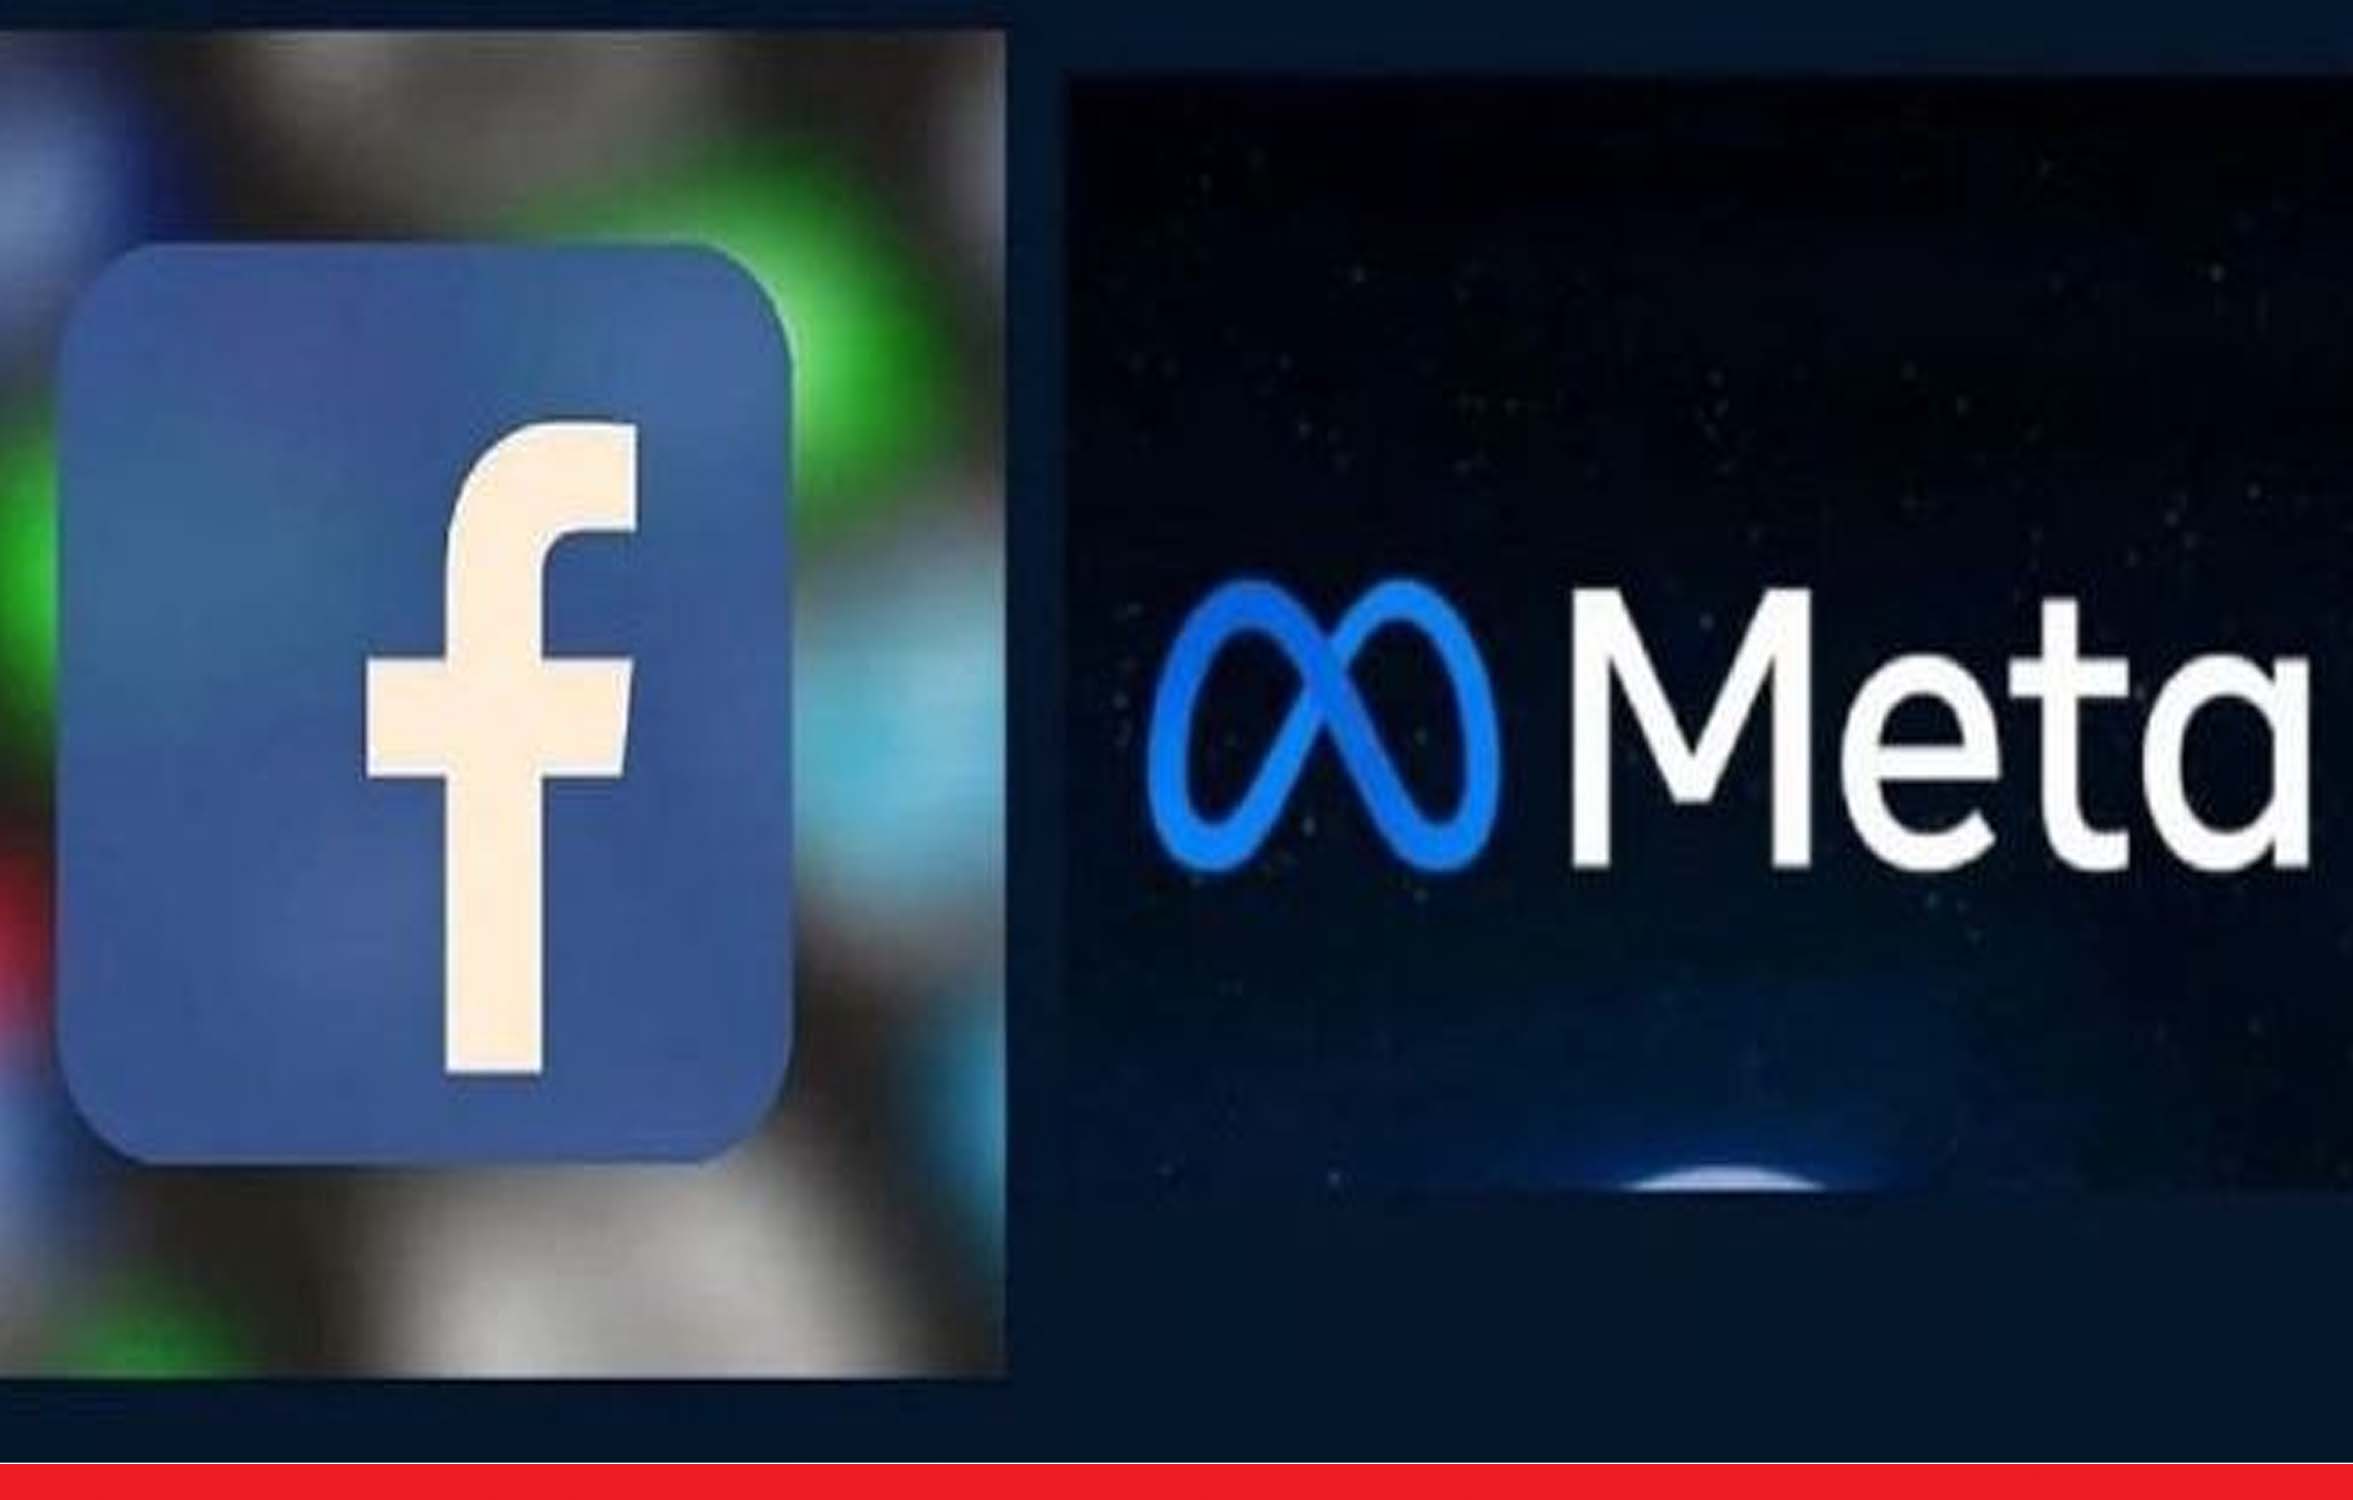 बदल गया सोशल मीडिया प्लेटफॉर्म फेसबुक का नाम, अब मेटा के नाम से पहचाना जाएगा